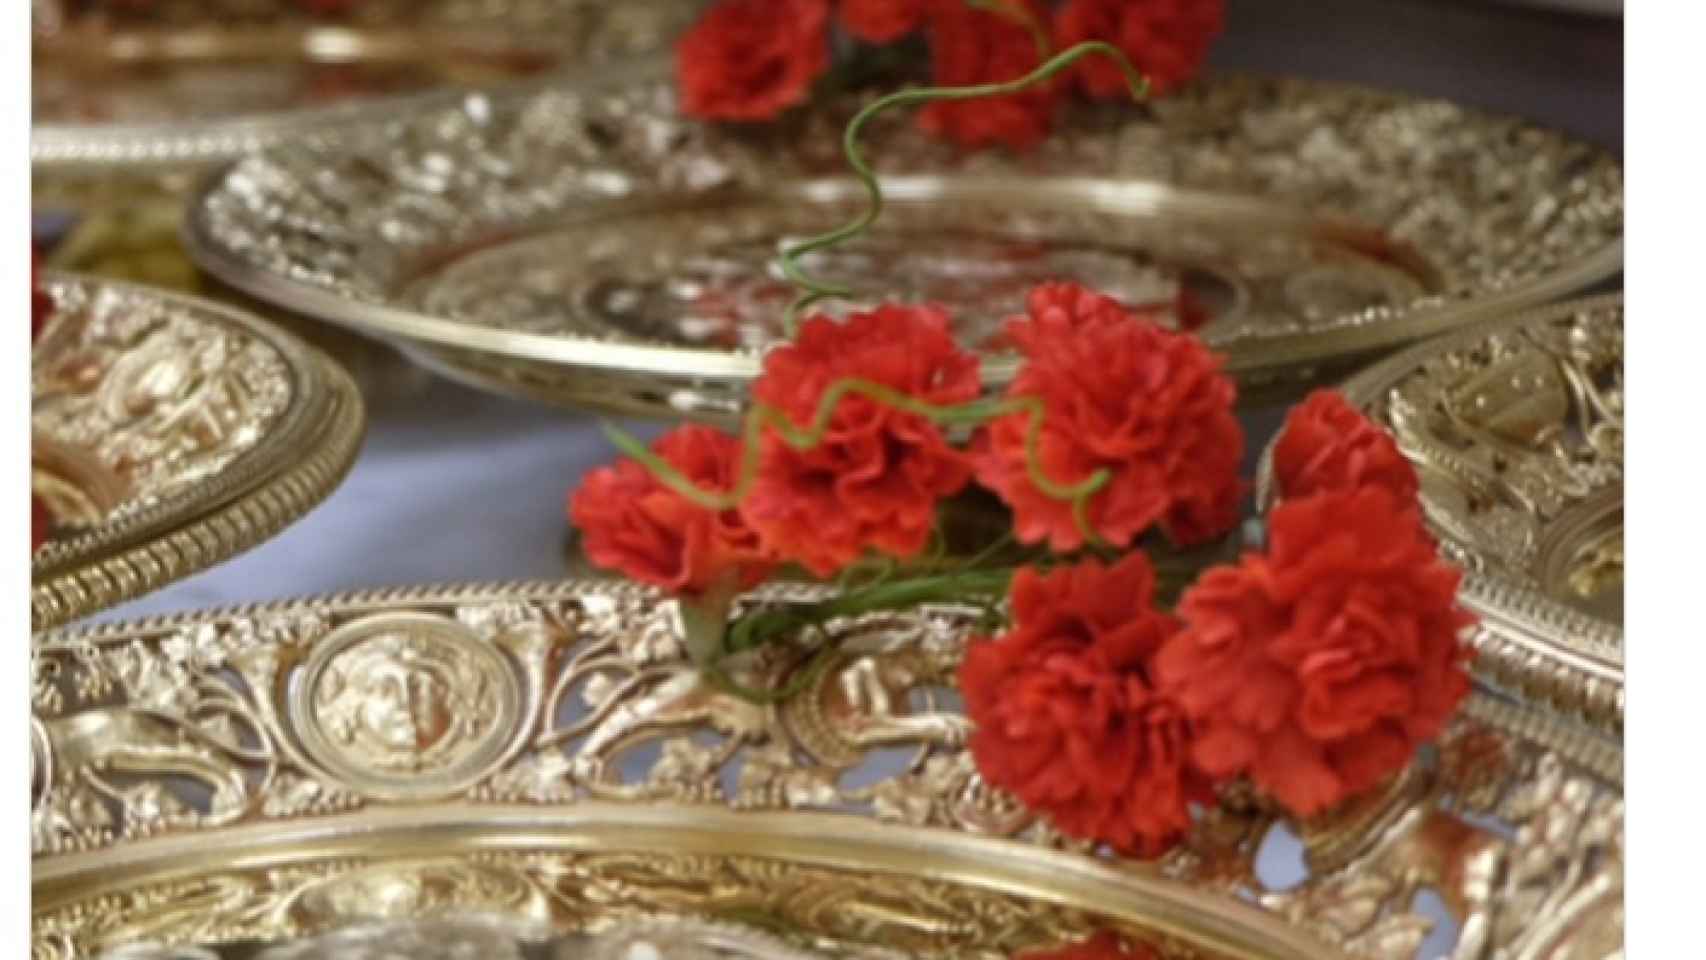 Los claveles colocados junto a los platos de oro del Salón de Baile de Buckingham Palace.